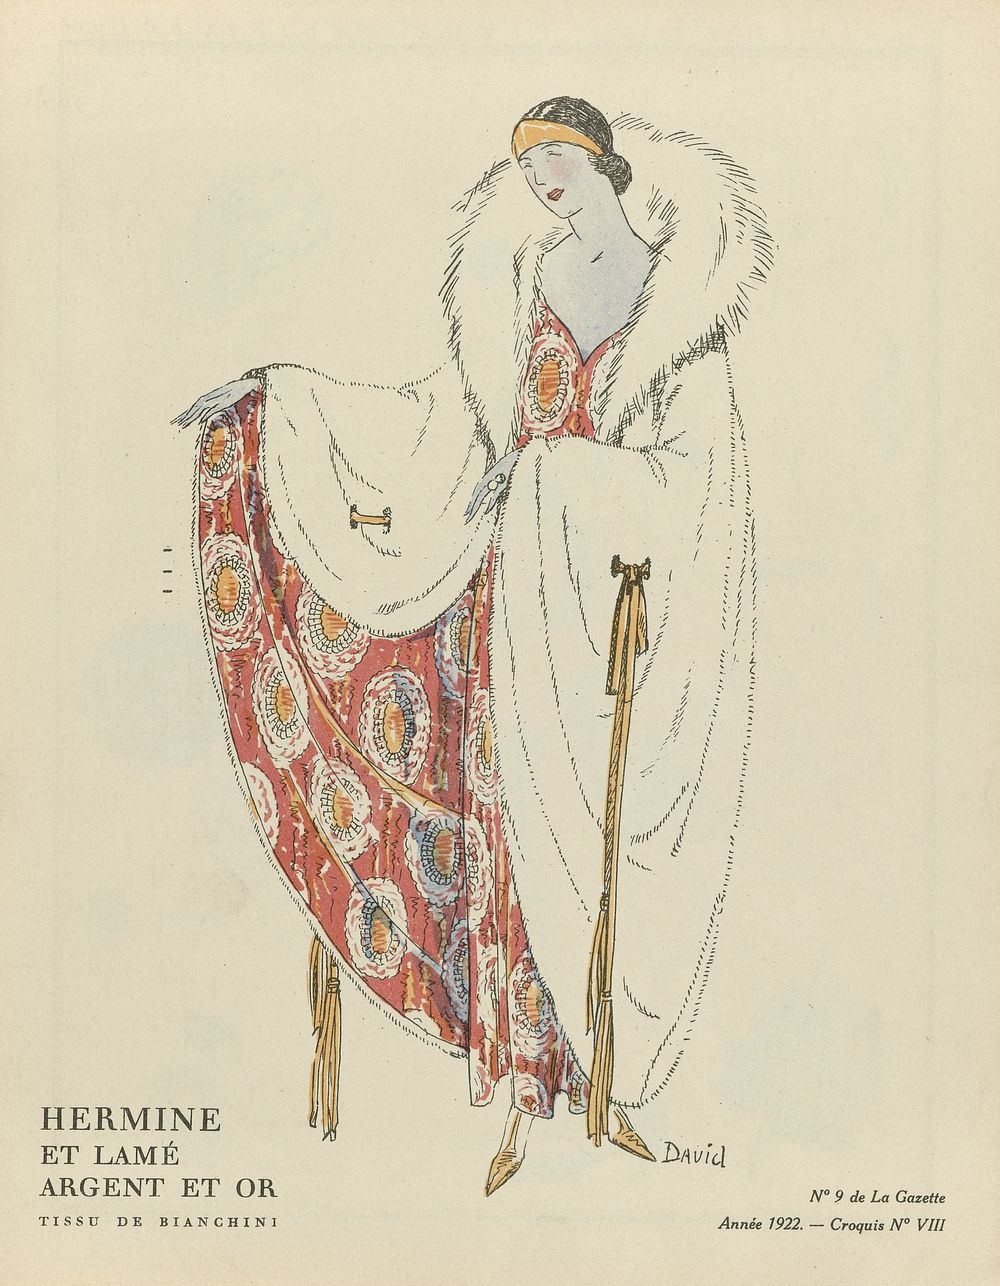 Gazette du Bon Ton, 1922 - No. 9 : Hermine et lamé argent et or / Tissu de Bianchini (1922) by David, anonymous, Bianchini…